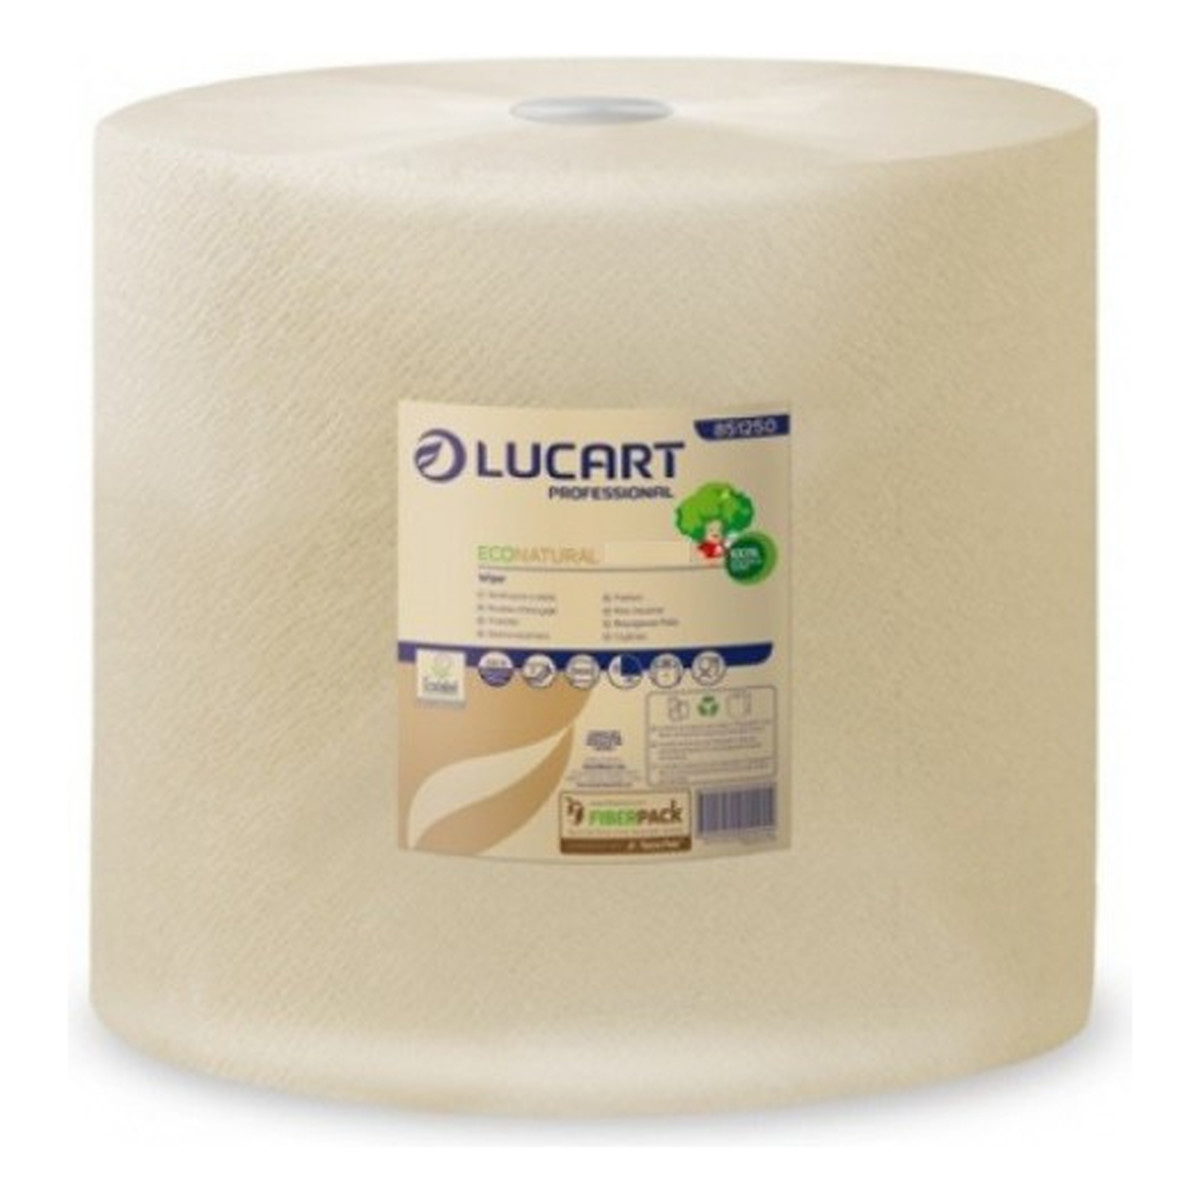 Lucart EcoNatural Ręcznik w roli 135 2 warstwy 450 Listków